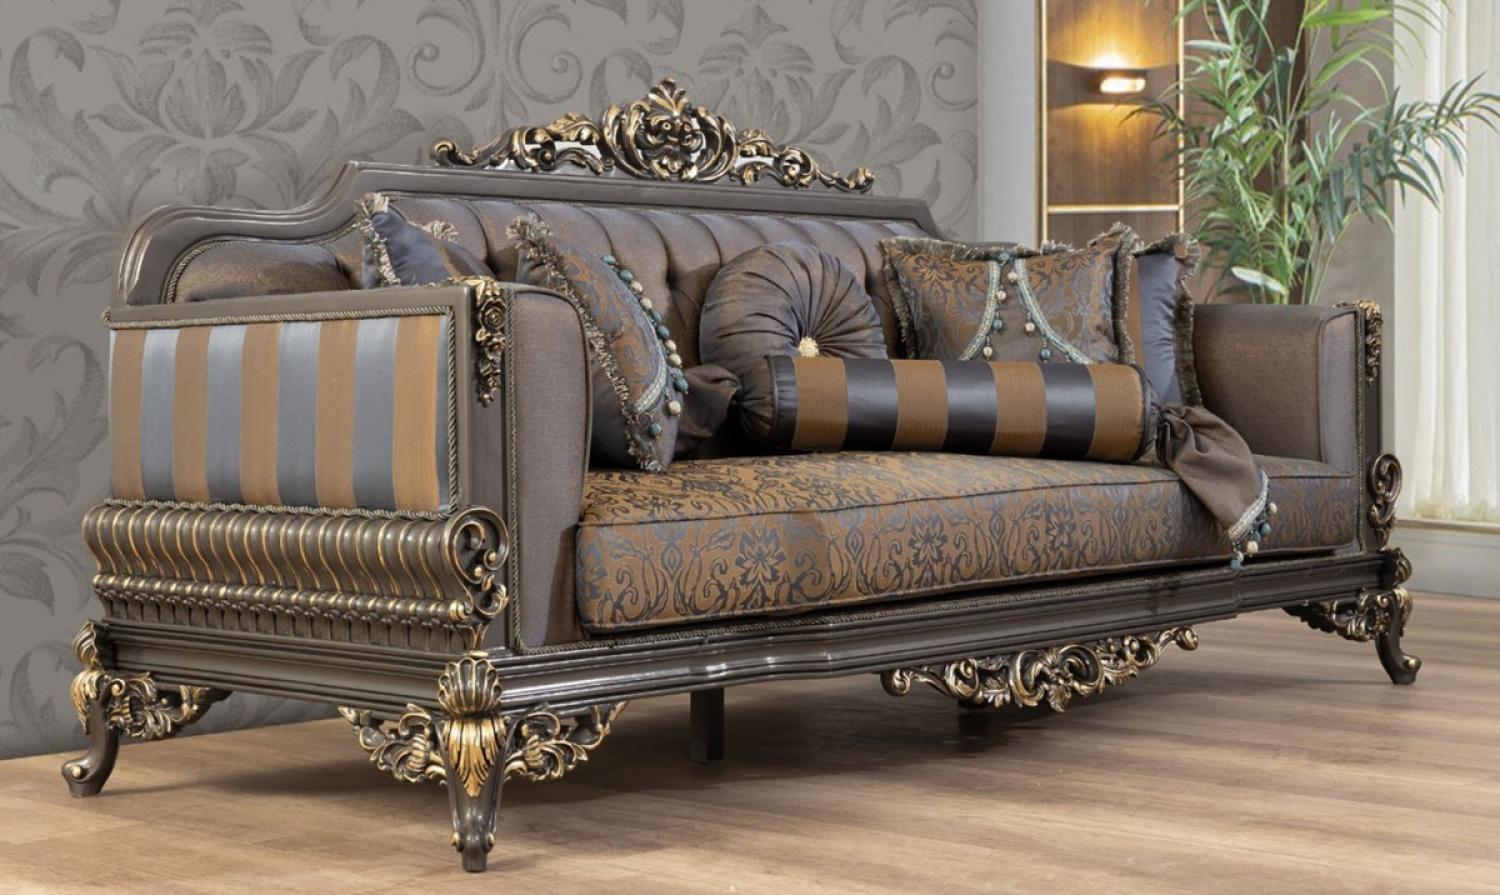 Casa Padrino Luxus Barock Sofa Blau / Grau / Gold 235 x 93 x H. 115 cm - Prunkvolles handgefertigtes Wohnzimmer Sofa mit dekorativen Kissen Bild 1